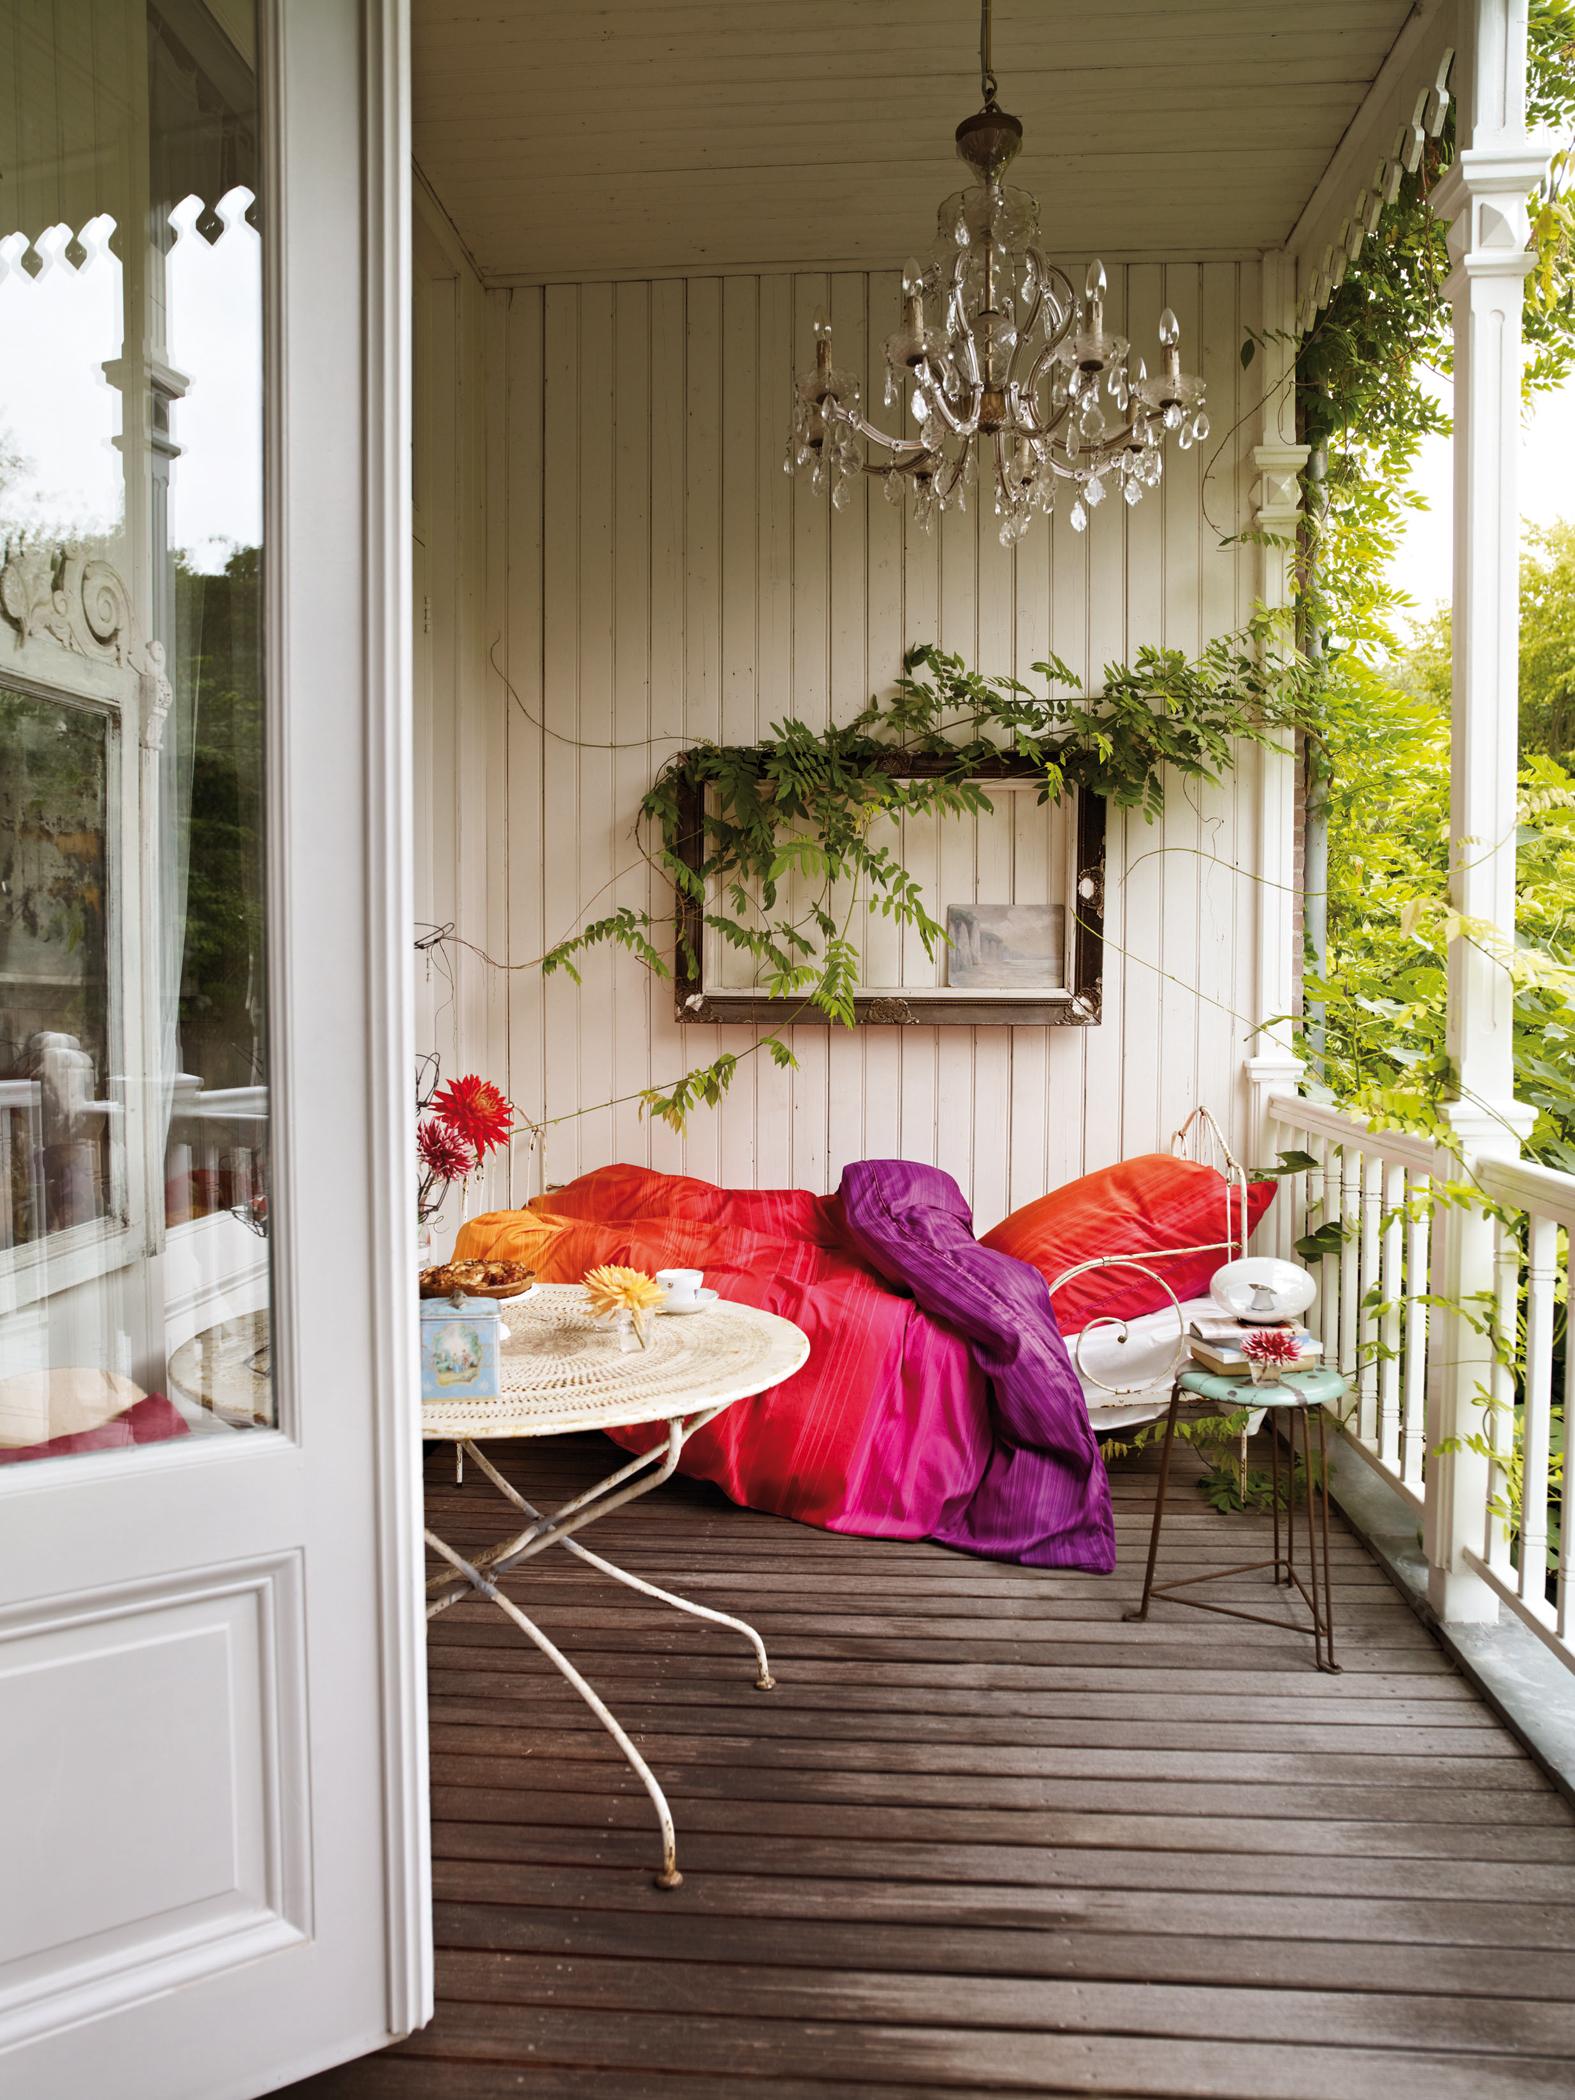 Bett im Freien #bett #bettwäsche #veranda #außenbeleuchtung #terrassentisch #hausgestaltung ©Esprit Home